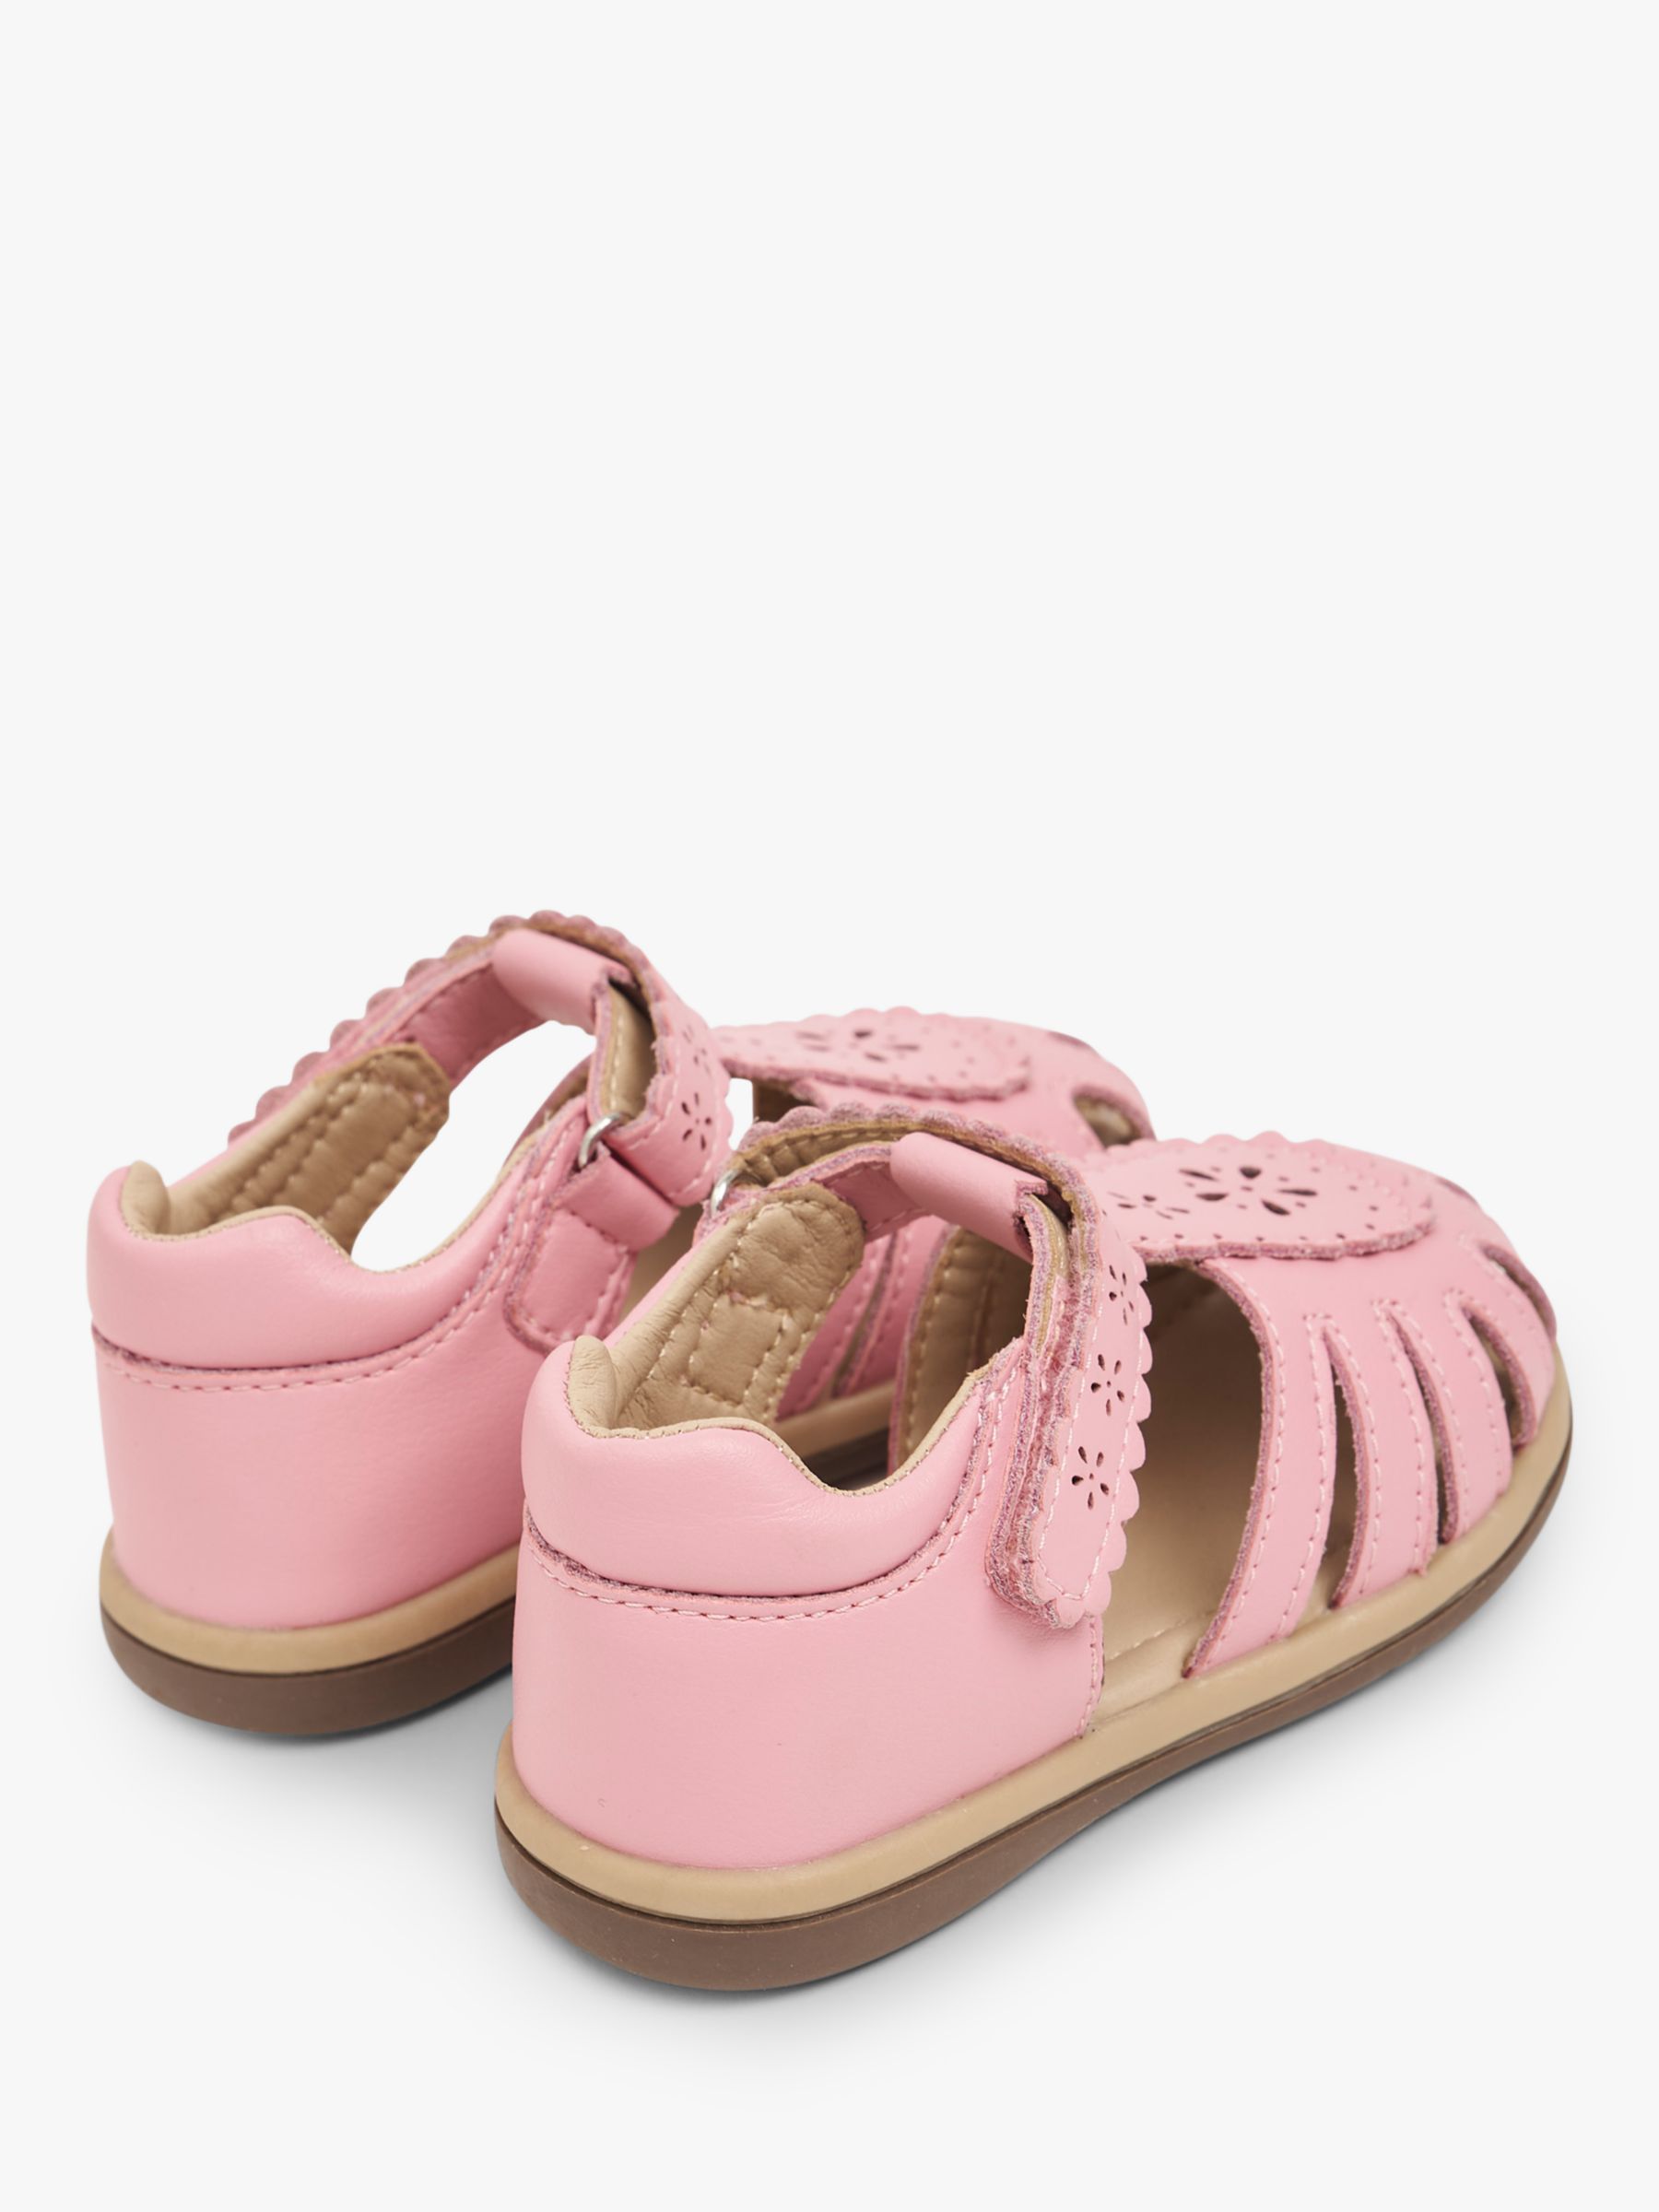 JoJo Maman Bébé Kids' Leather Floral Etched Sandals, Pink, 8 Jnr